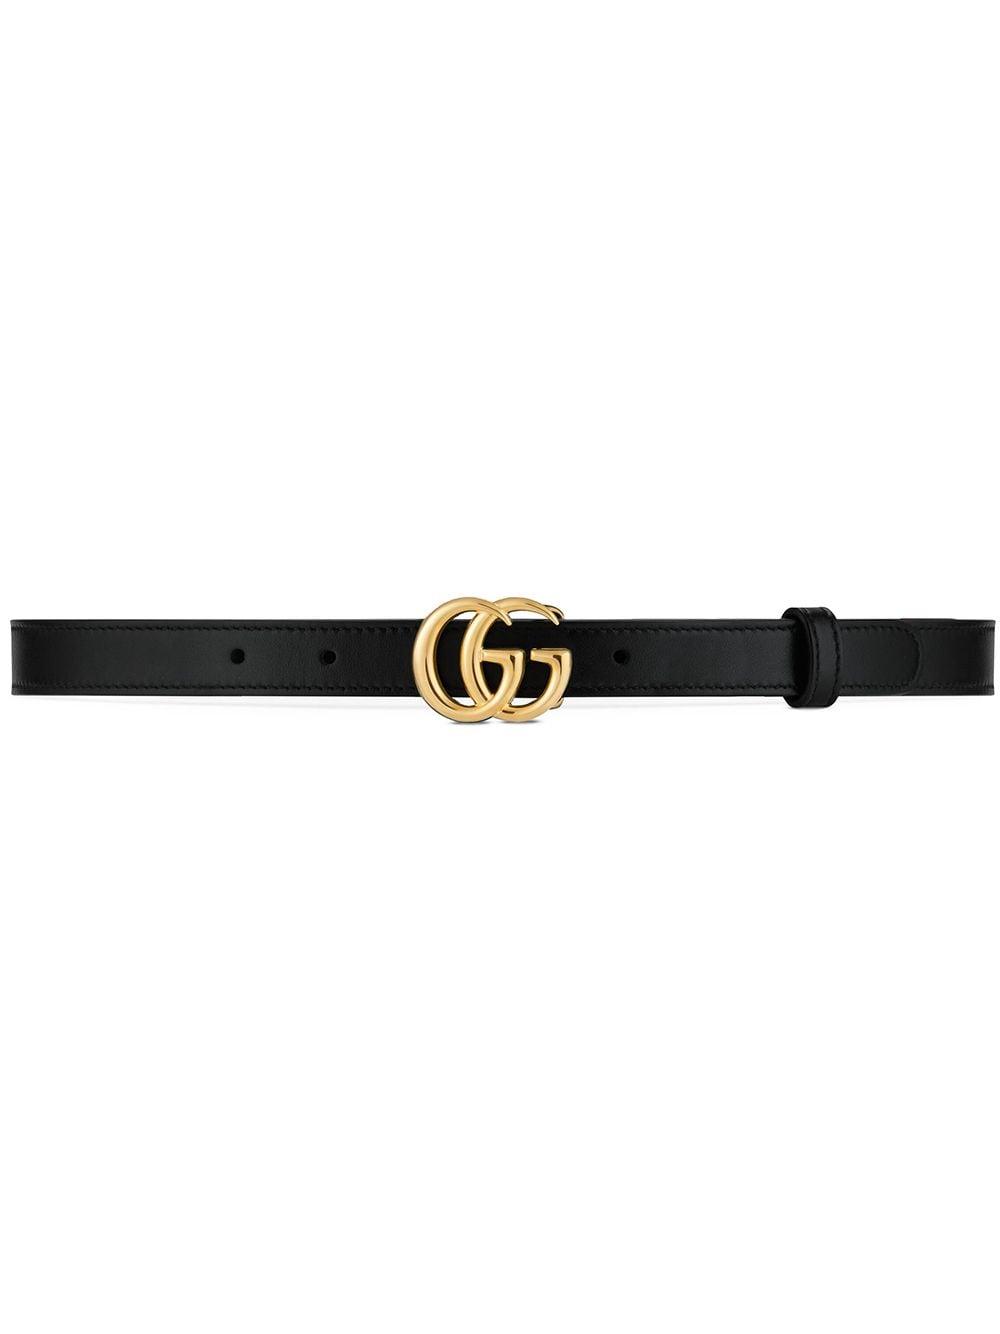 Cinturón GG Marmont de Gucci color Negro | Lyst